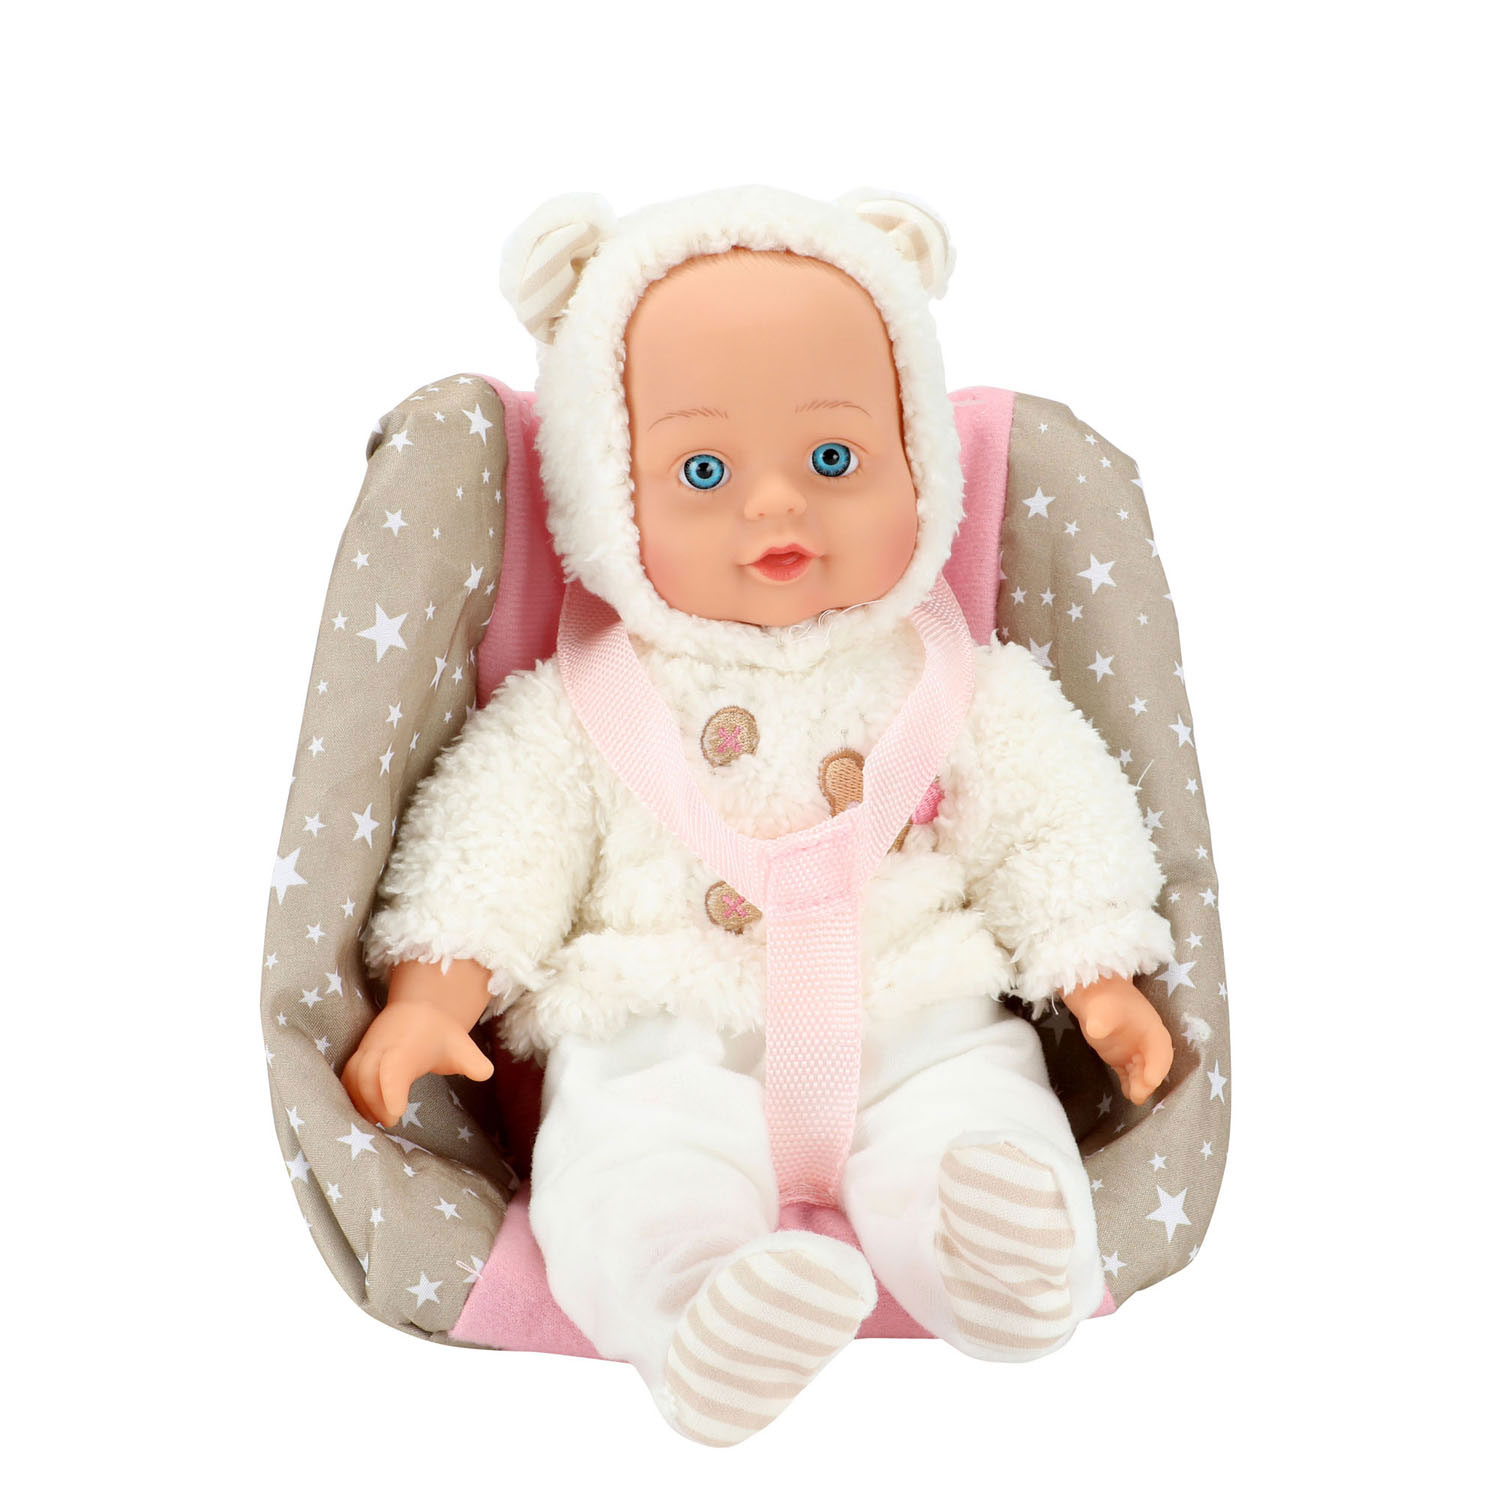 Baby Beau Poupée bébé dans un siège de poupée, 33 cm